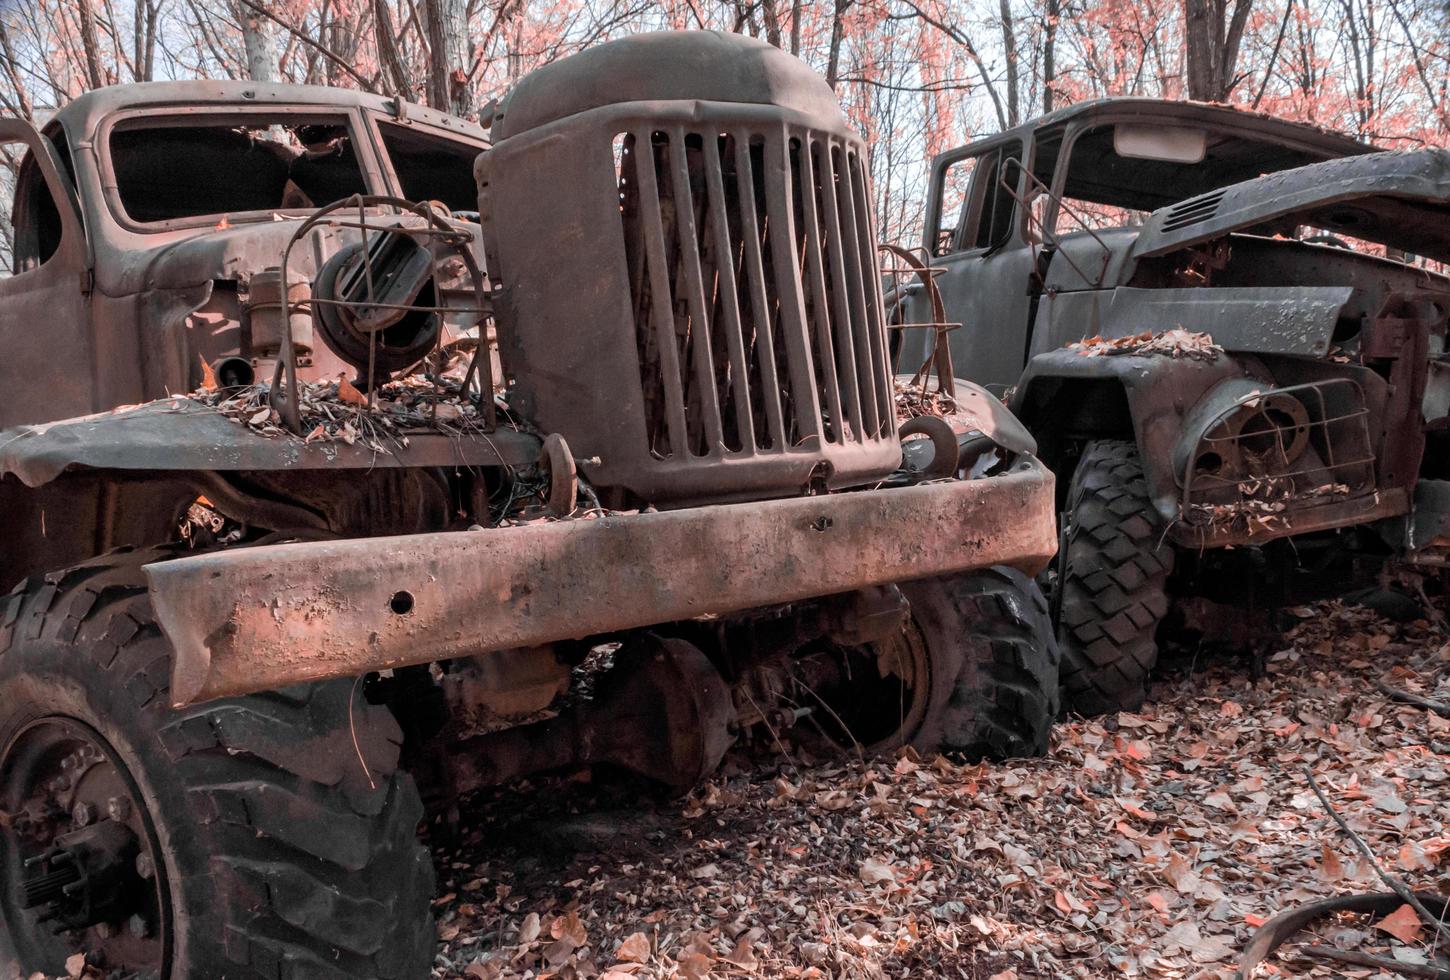 pripyat, ucrânia, 2021 - dois caminhões militares enferrujados abandonados, chernobyl foto